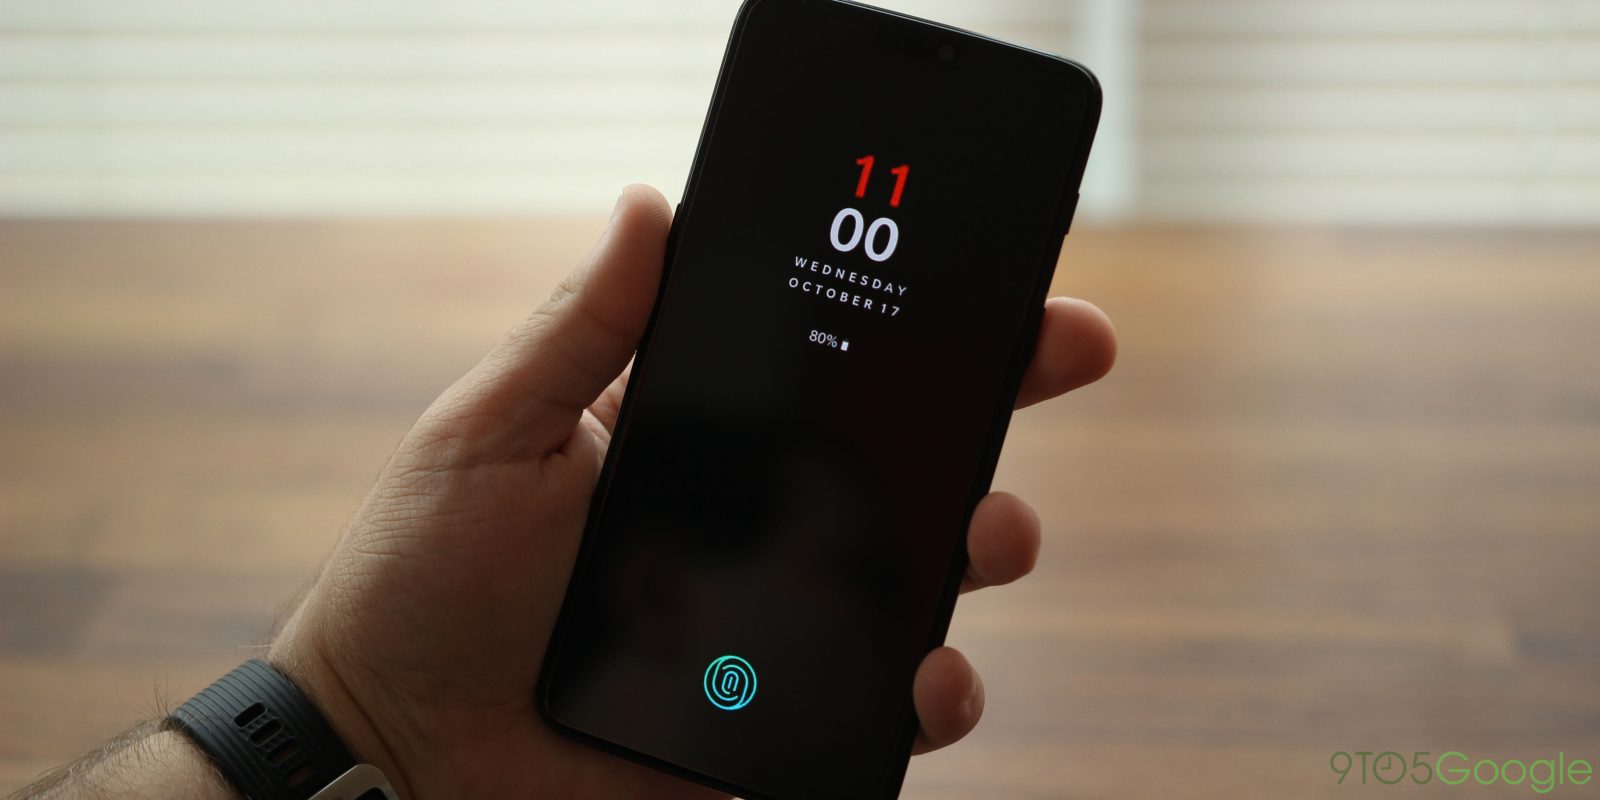 OnePlus 6T kaleratze data argia bihurtzen da